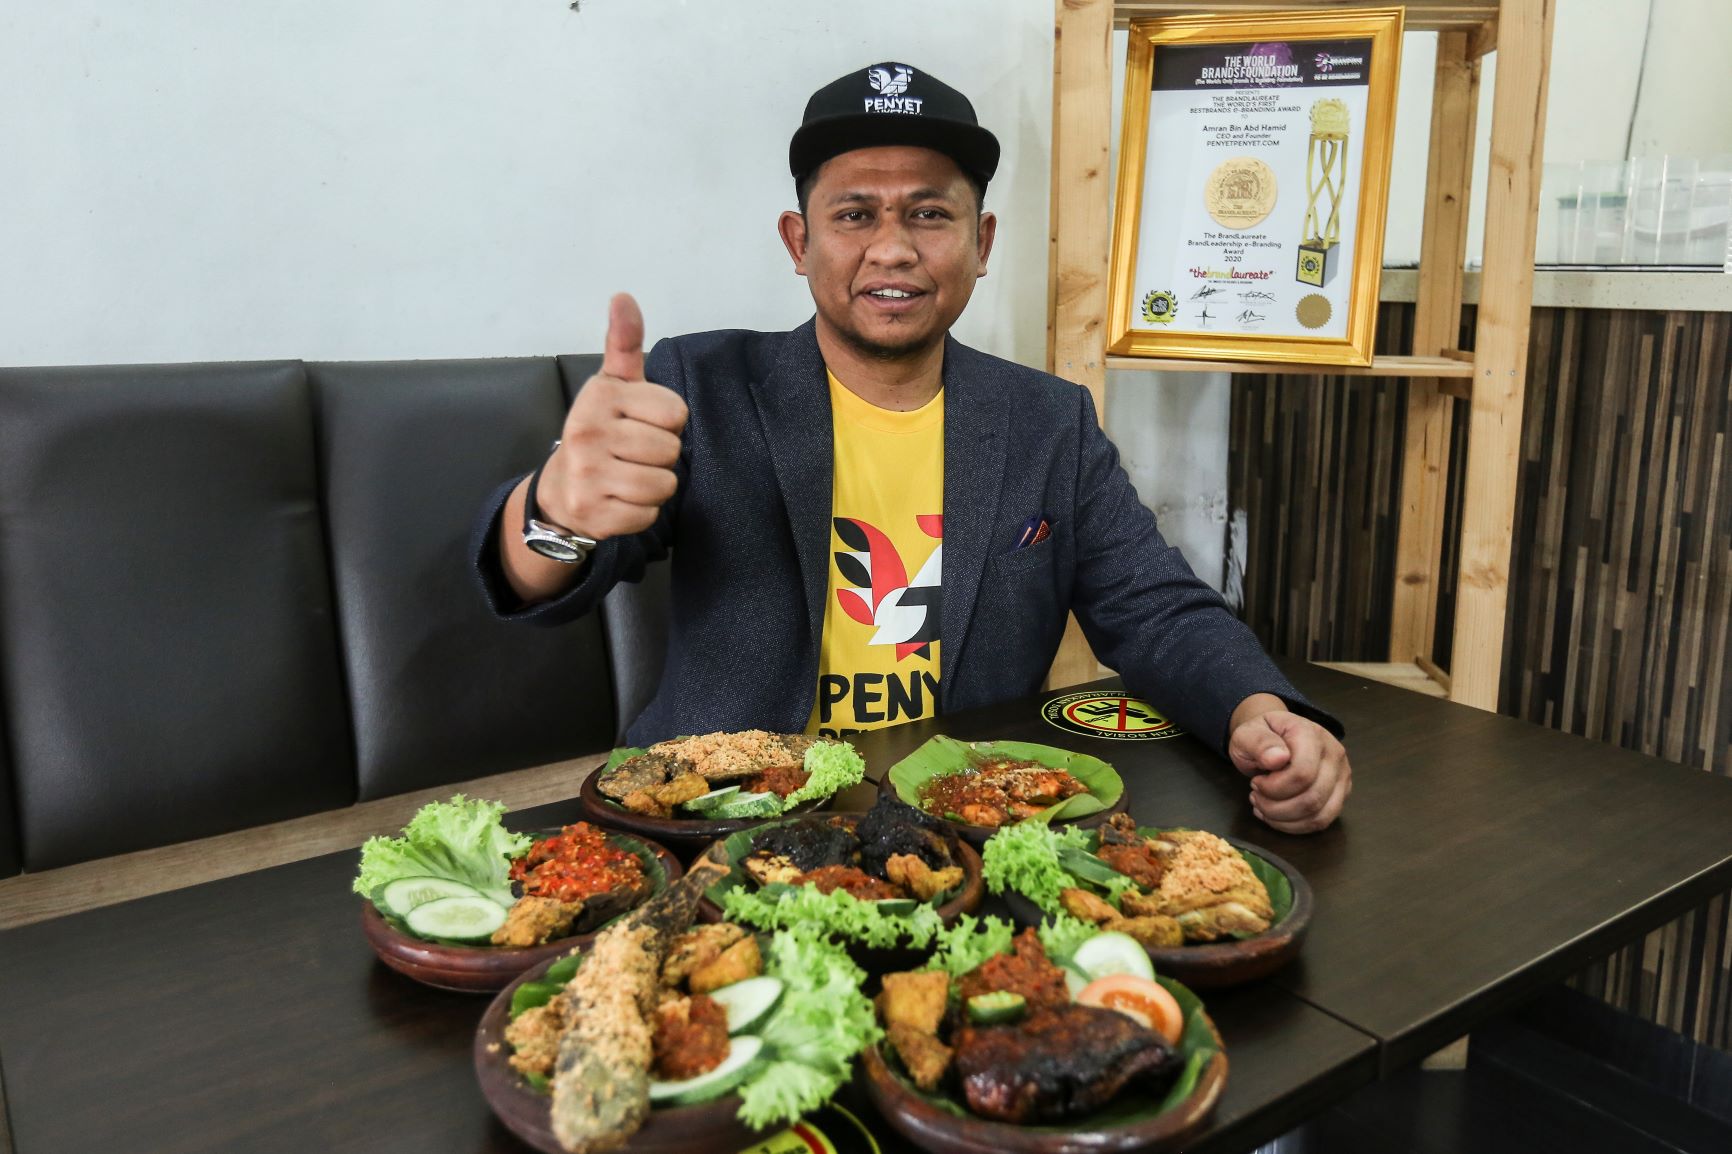 Perjuangan Penyet Penyet Com Berjaya Tembusi Pusat Beli Belah Tawar Hidangan Menu Nusantara Kosmo Digital